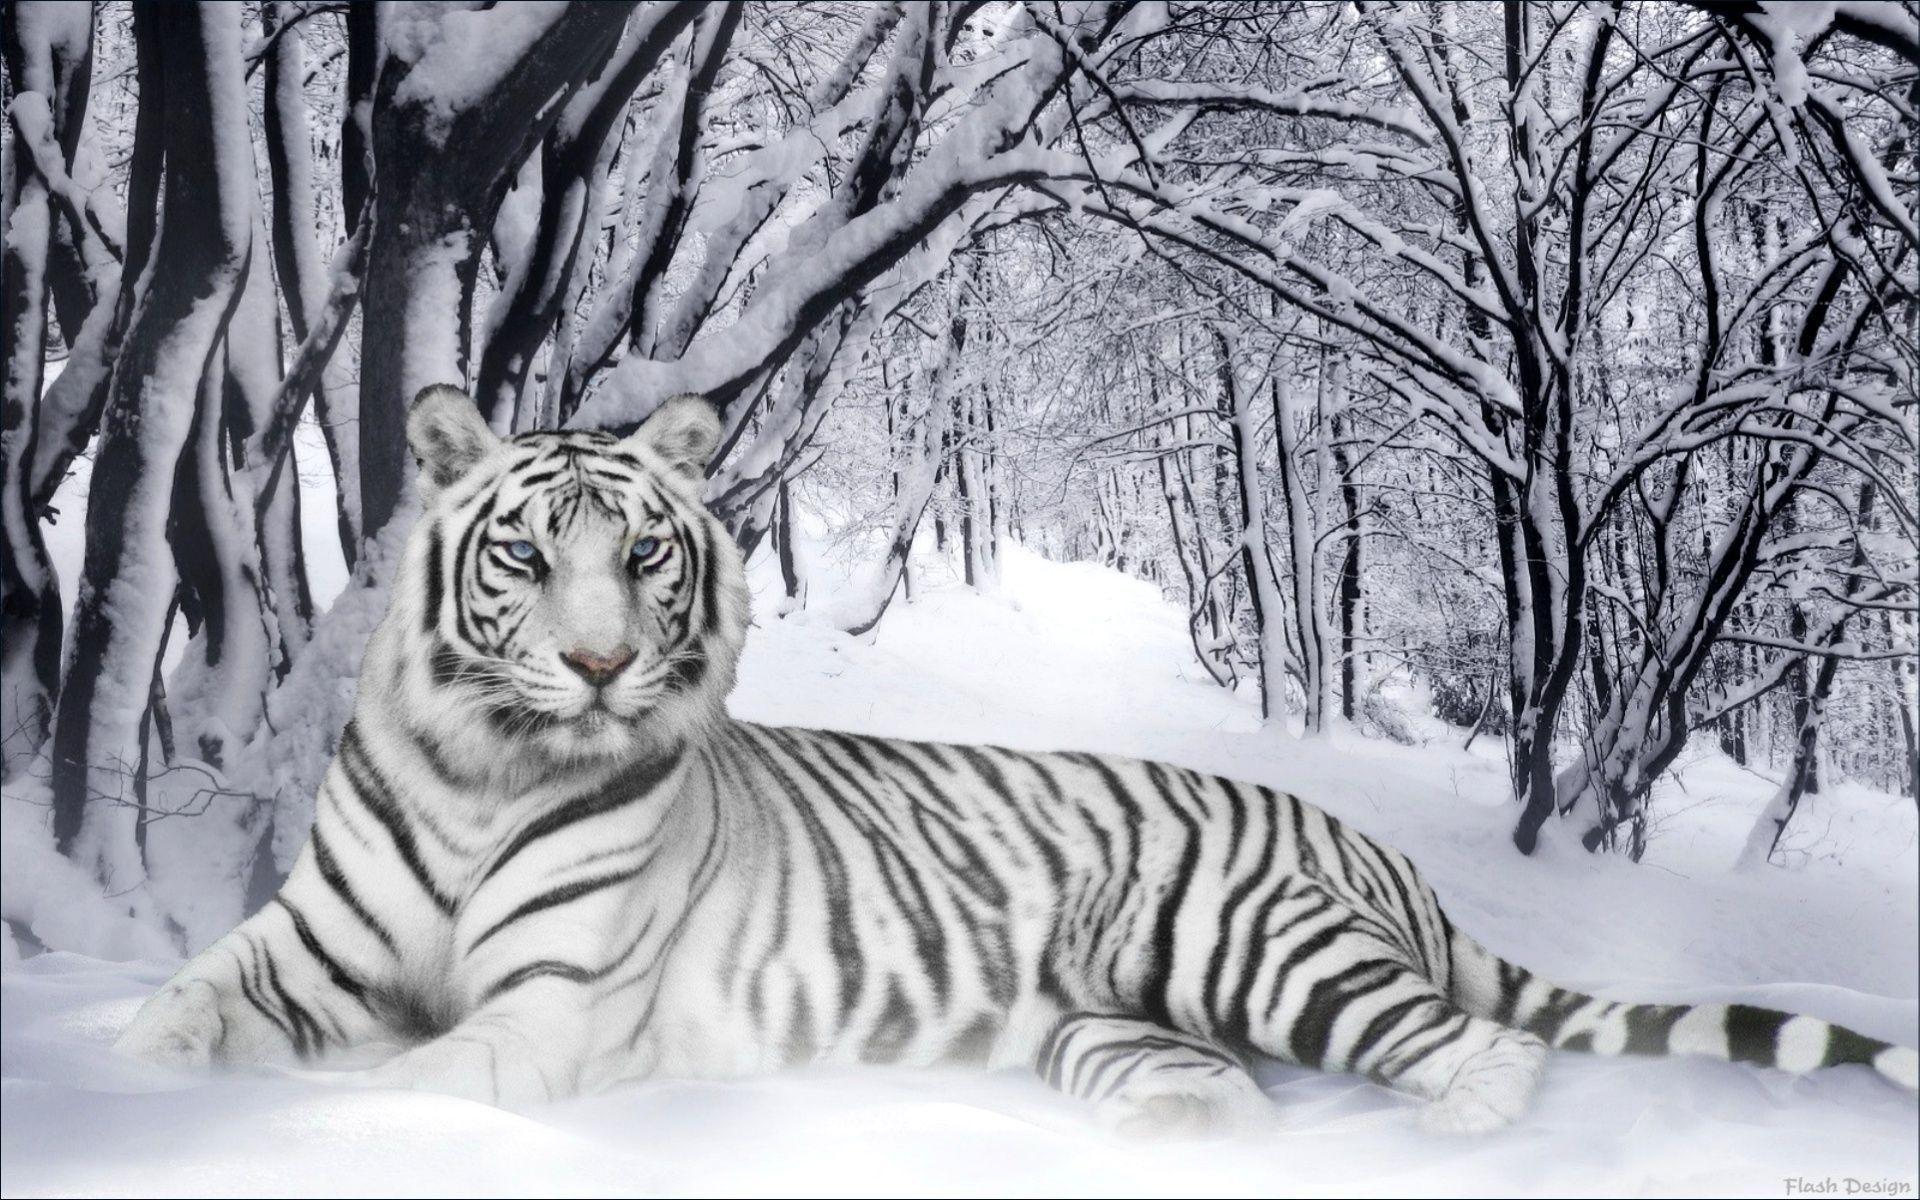 FunMozar – The White Tiger